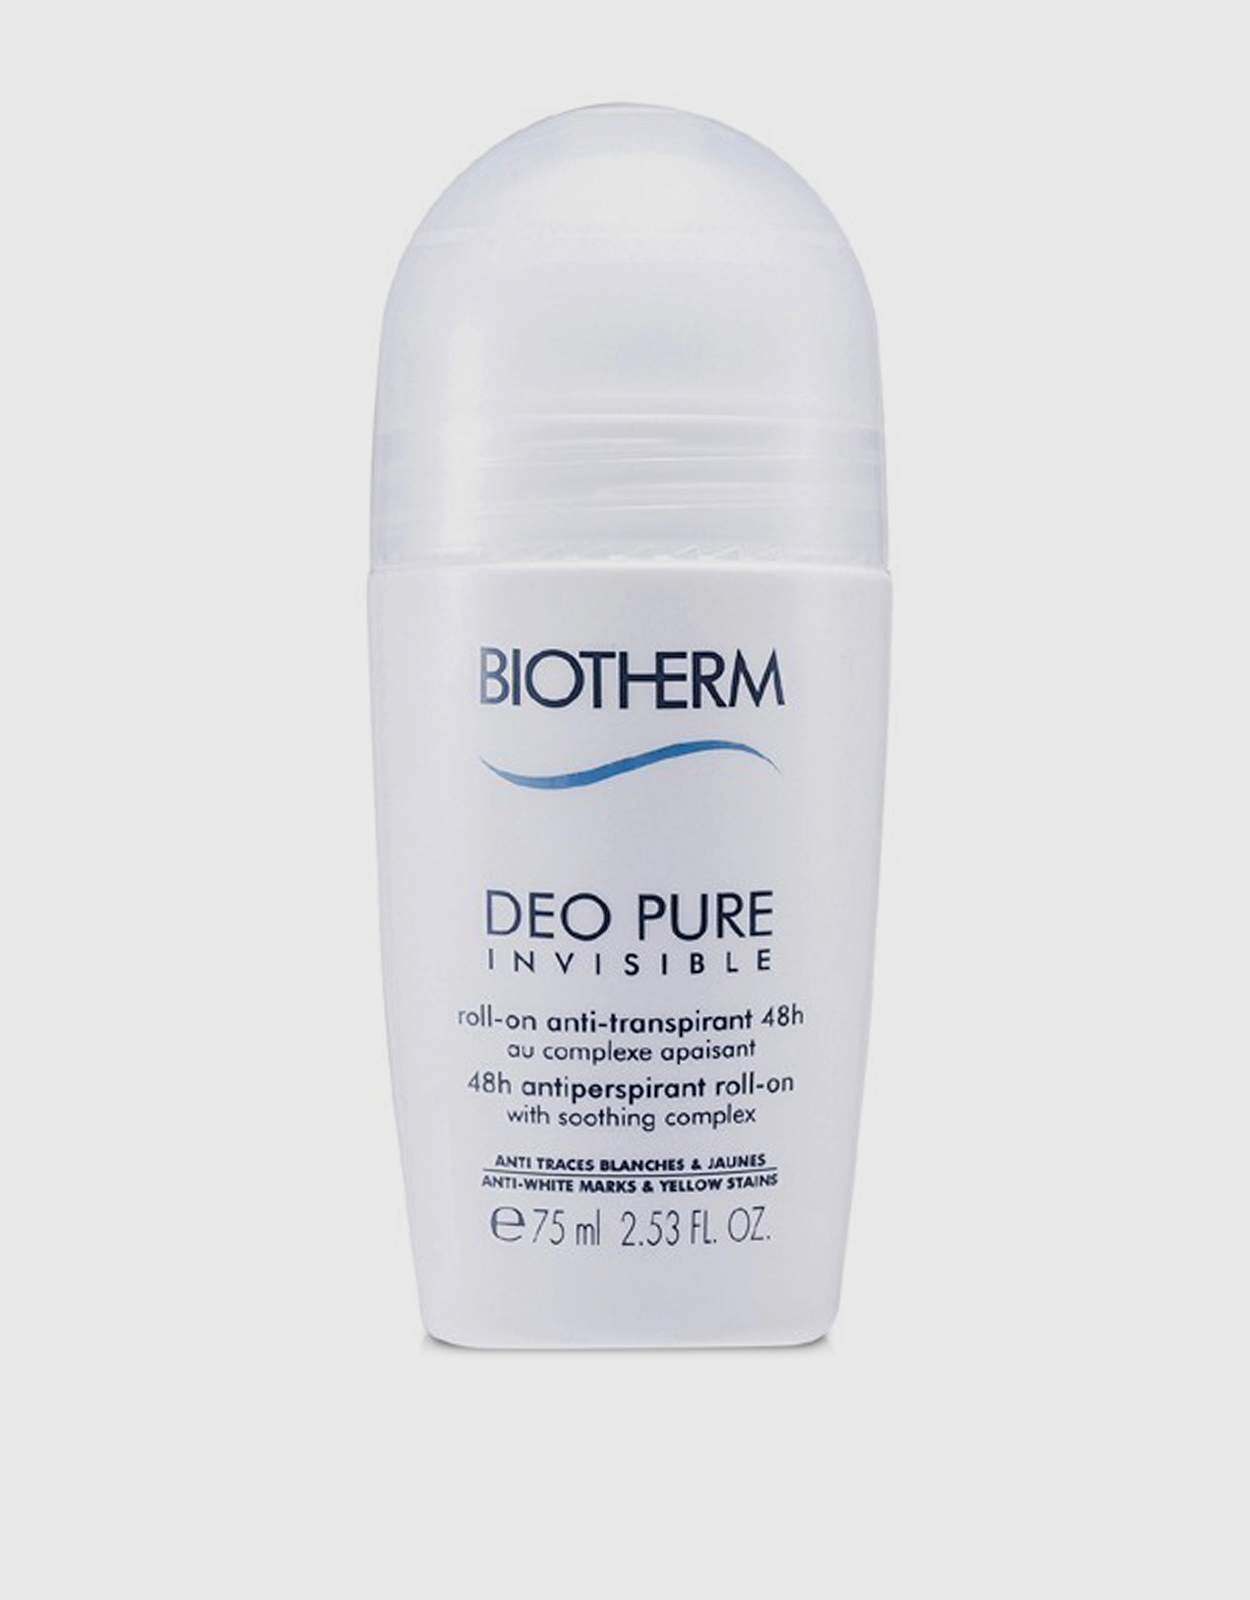 Deo Pure Invisible 48 Hours Antiperspirant 75ml (Bath Bodycare,Bodycare,Deodorant) IFCHIC.COM